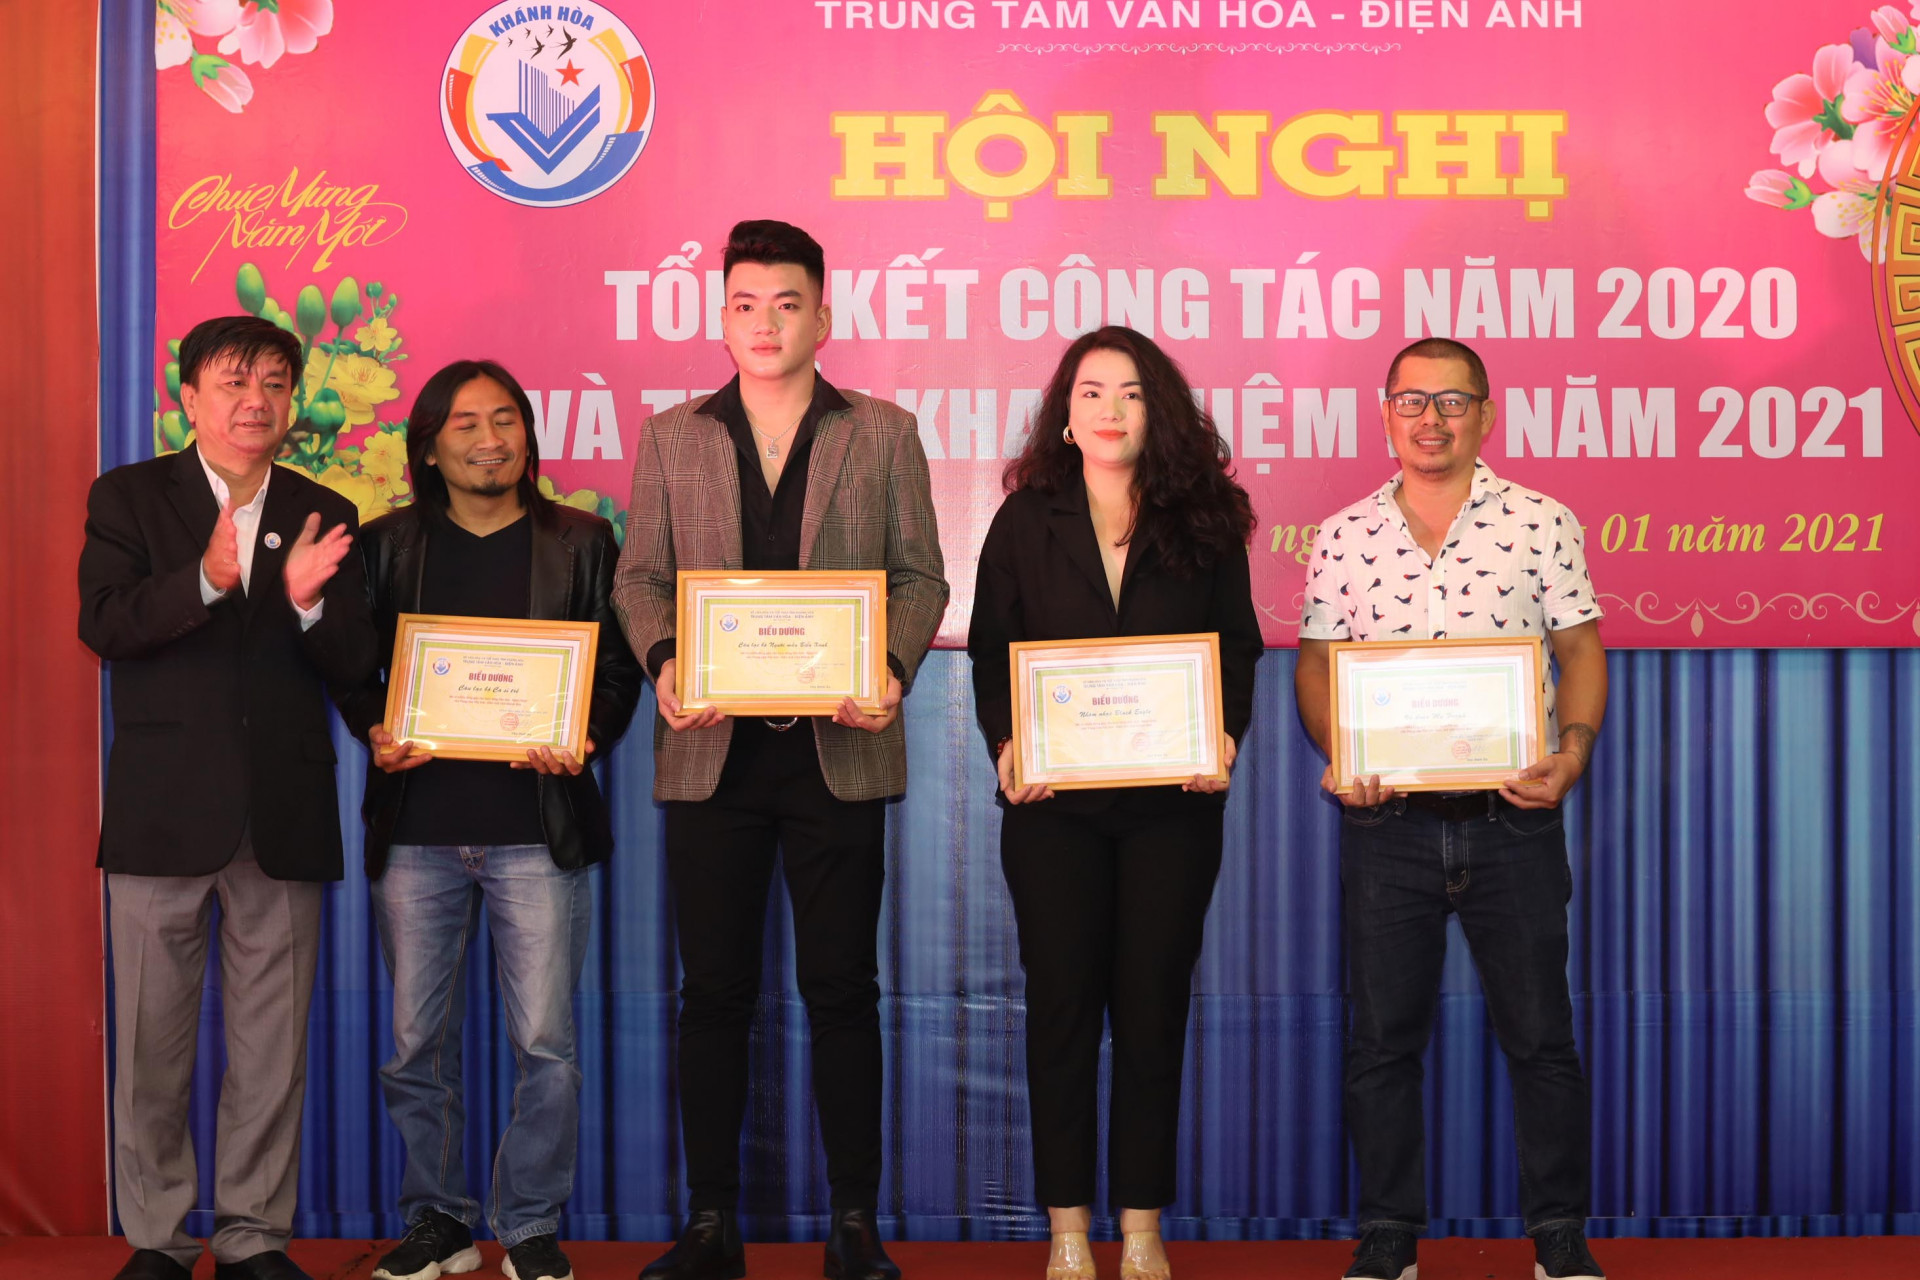 Lãnh đạo Trung tâm Văn hóa – Điện ảnh tỉnh Khánh Hòa trao giấy khen cho đại diện các tập thể. 